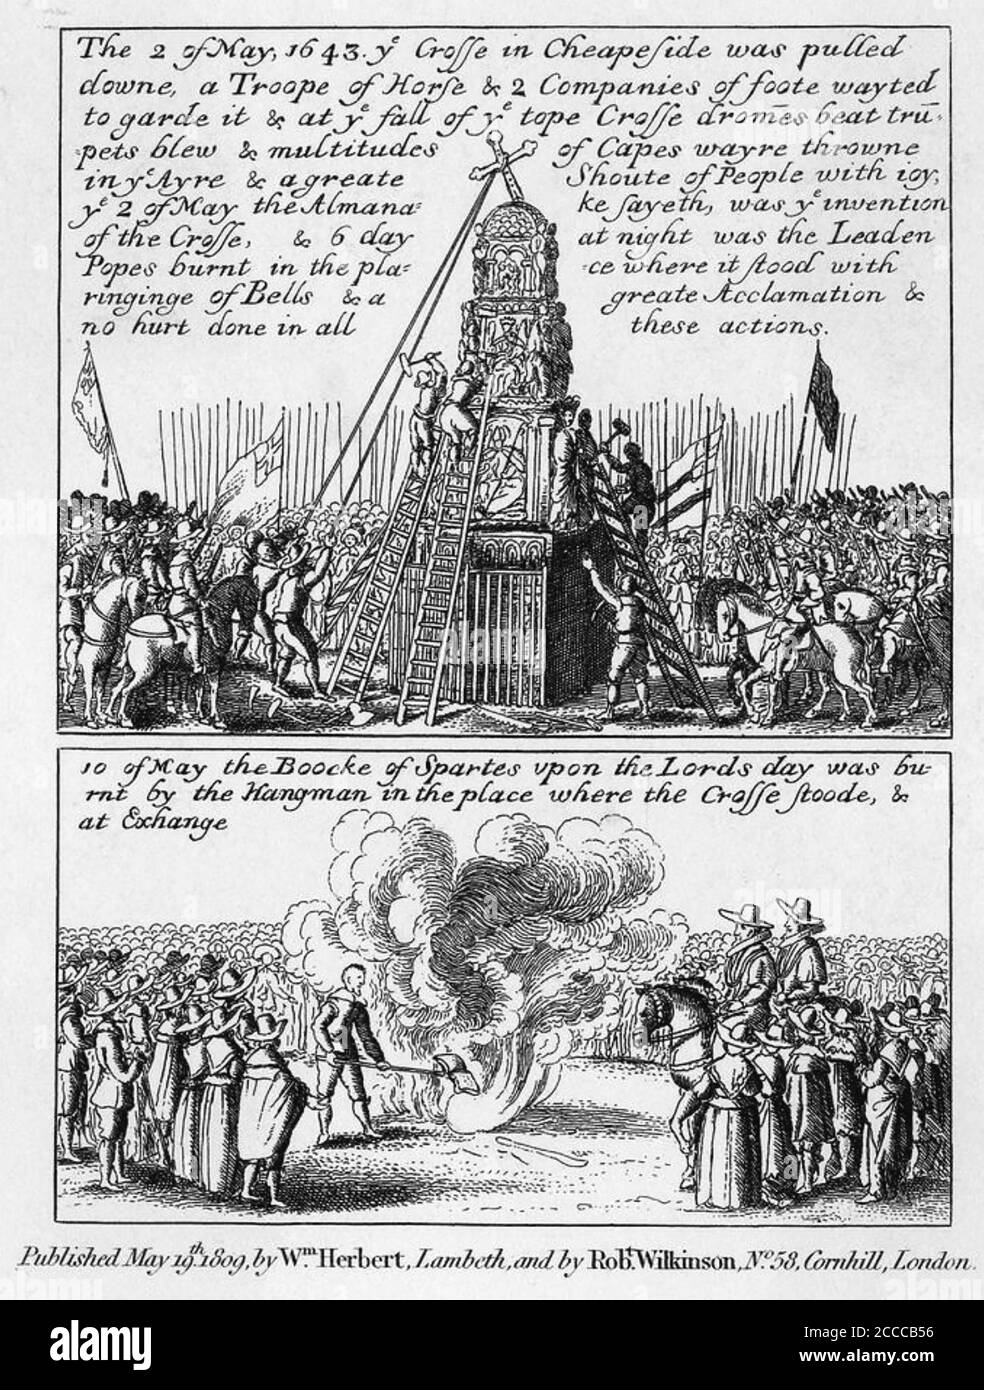 LONDRES MANIFESTACIONES PURITANAS contra la Monarquía 1643 Foto de stock